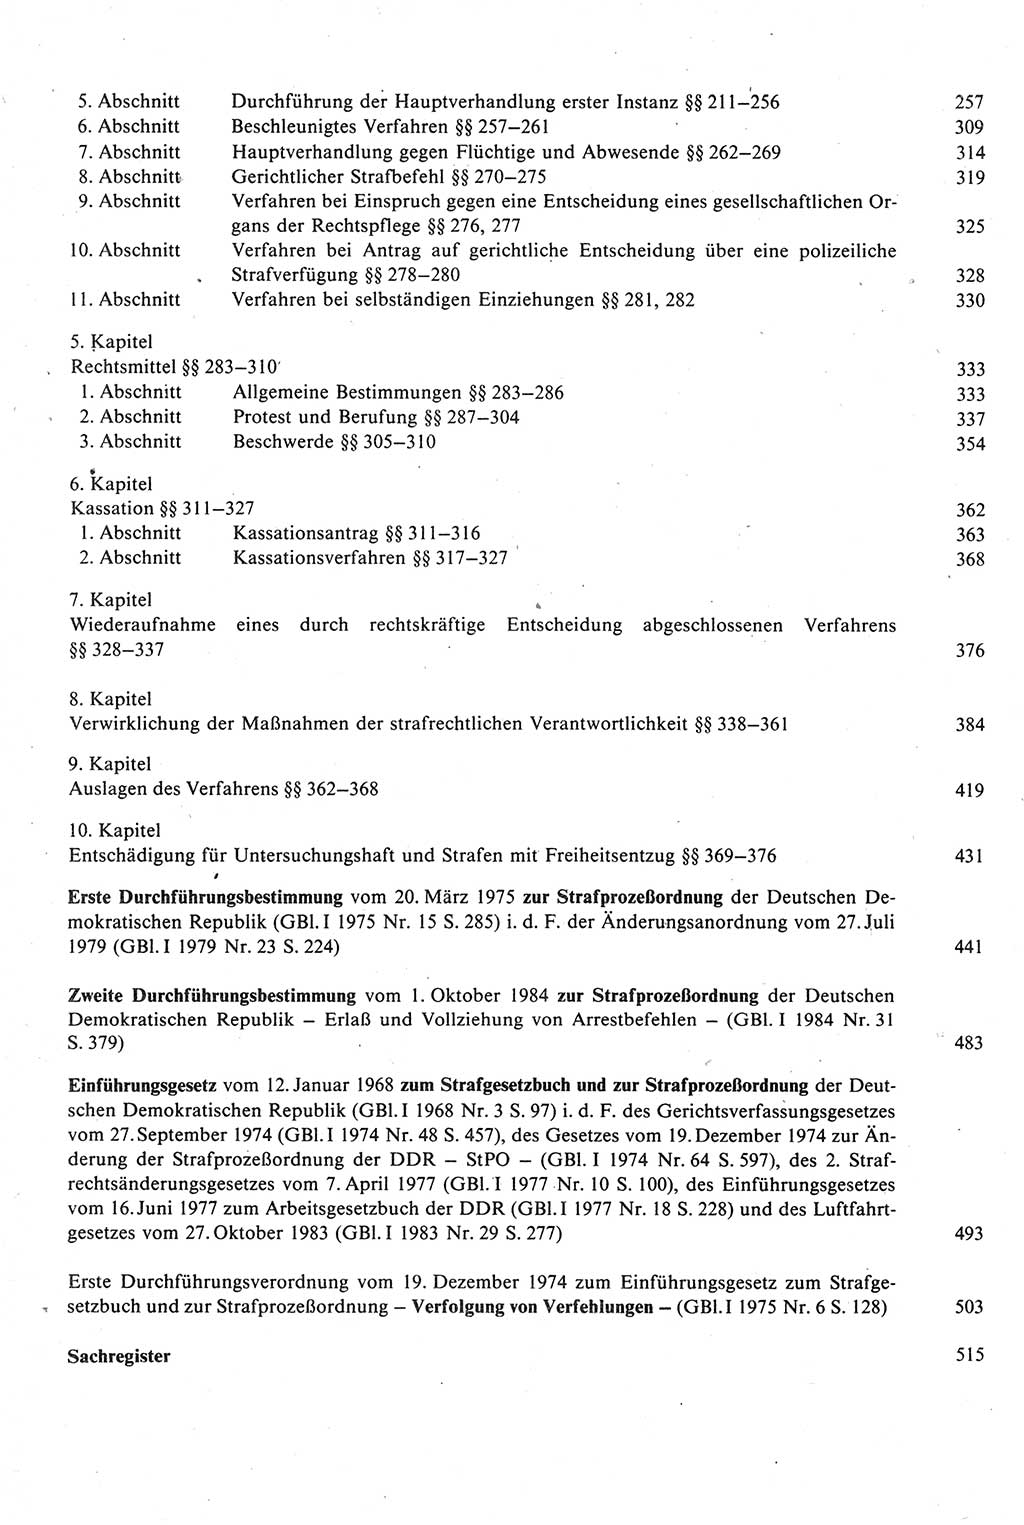 Strafprozeßrecht der DDR [Deutsche Demokratische Republik], Kommentar zur Strafprozeßordnung (StPO) 1987, Seite 6 (Strafprozeßr. DDR Komm. StPO 1987, S. 6)